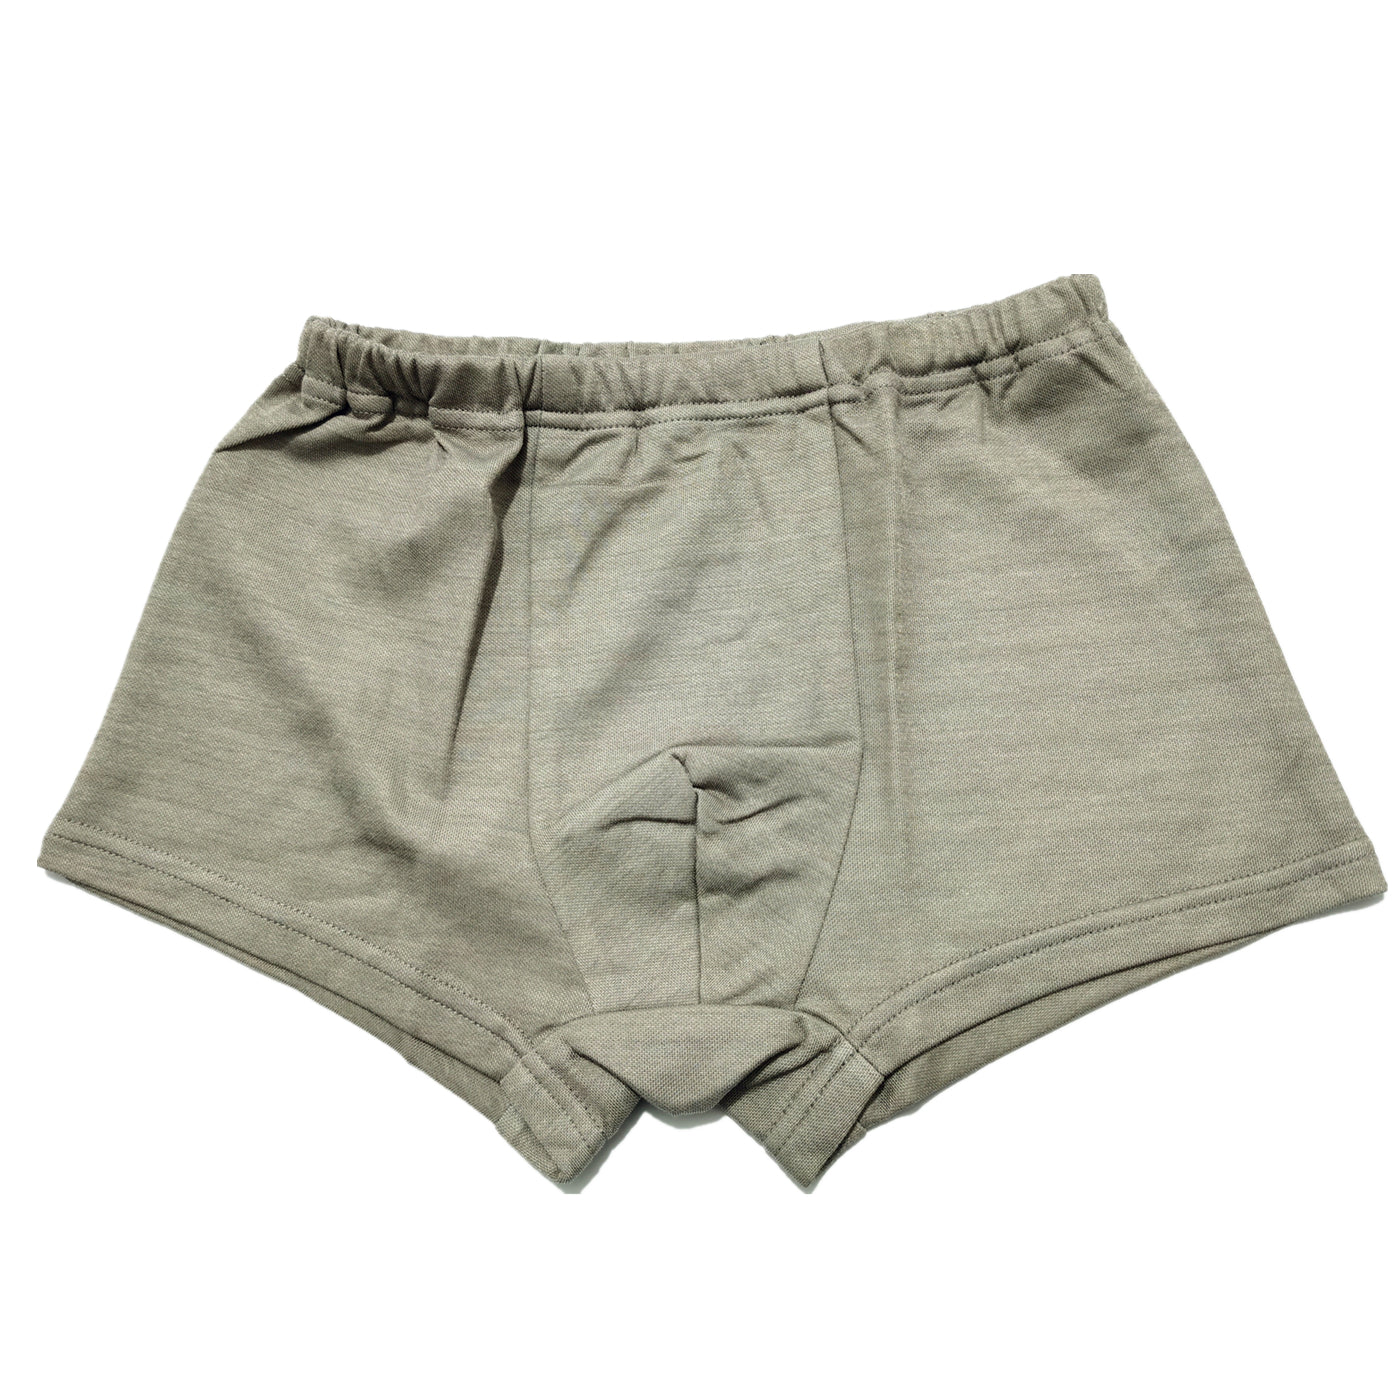 Unisex Underwear Boxer Briefs-Anti-Radiation RF EMF Protection